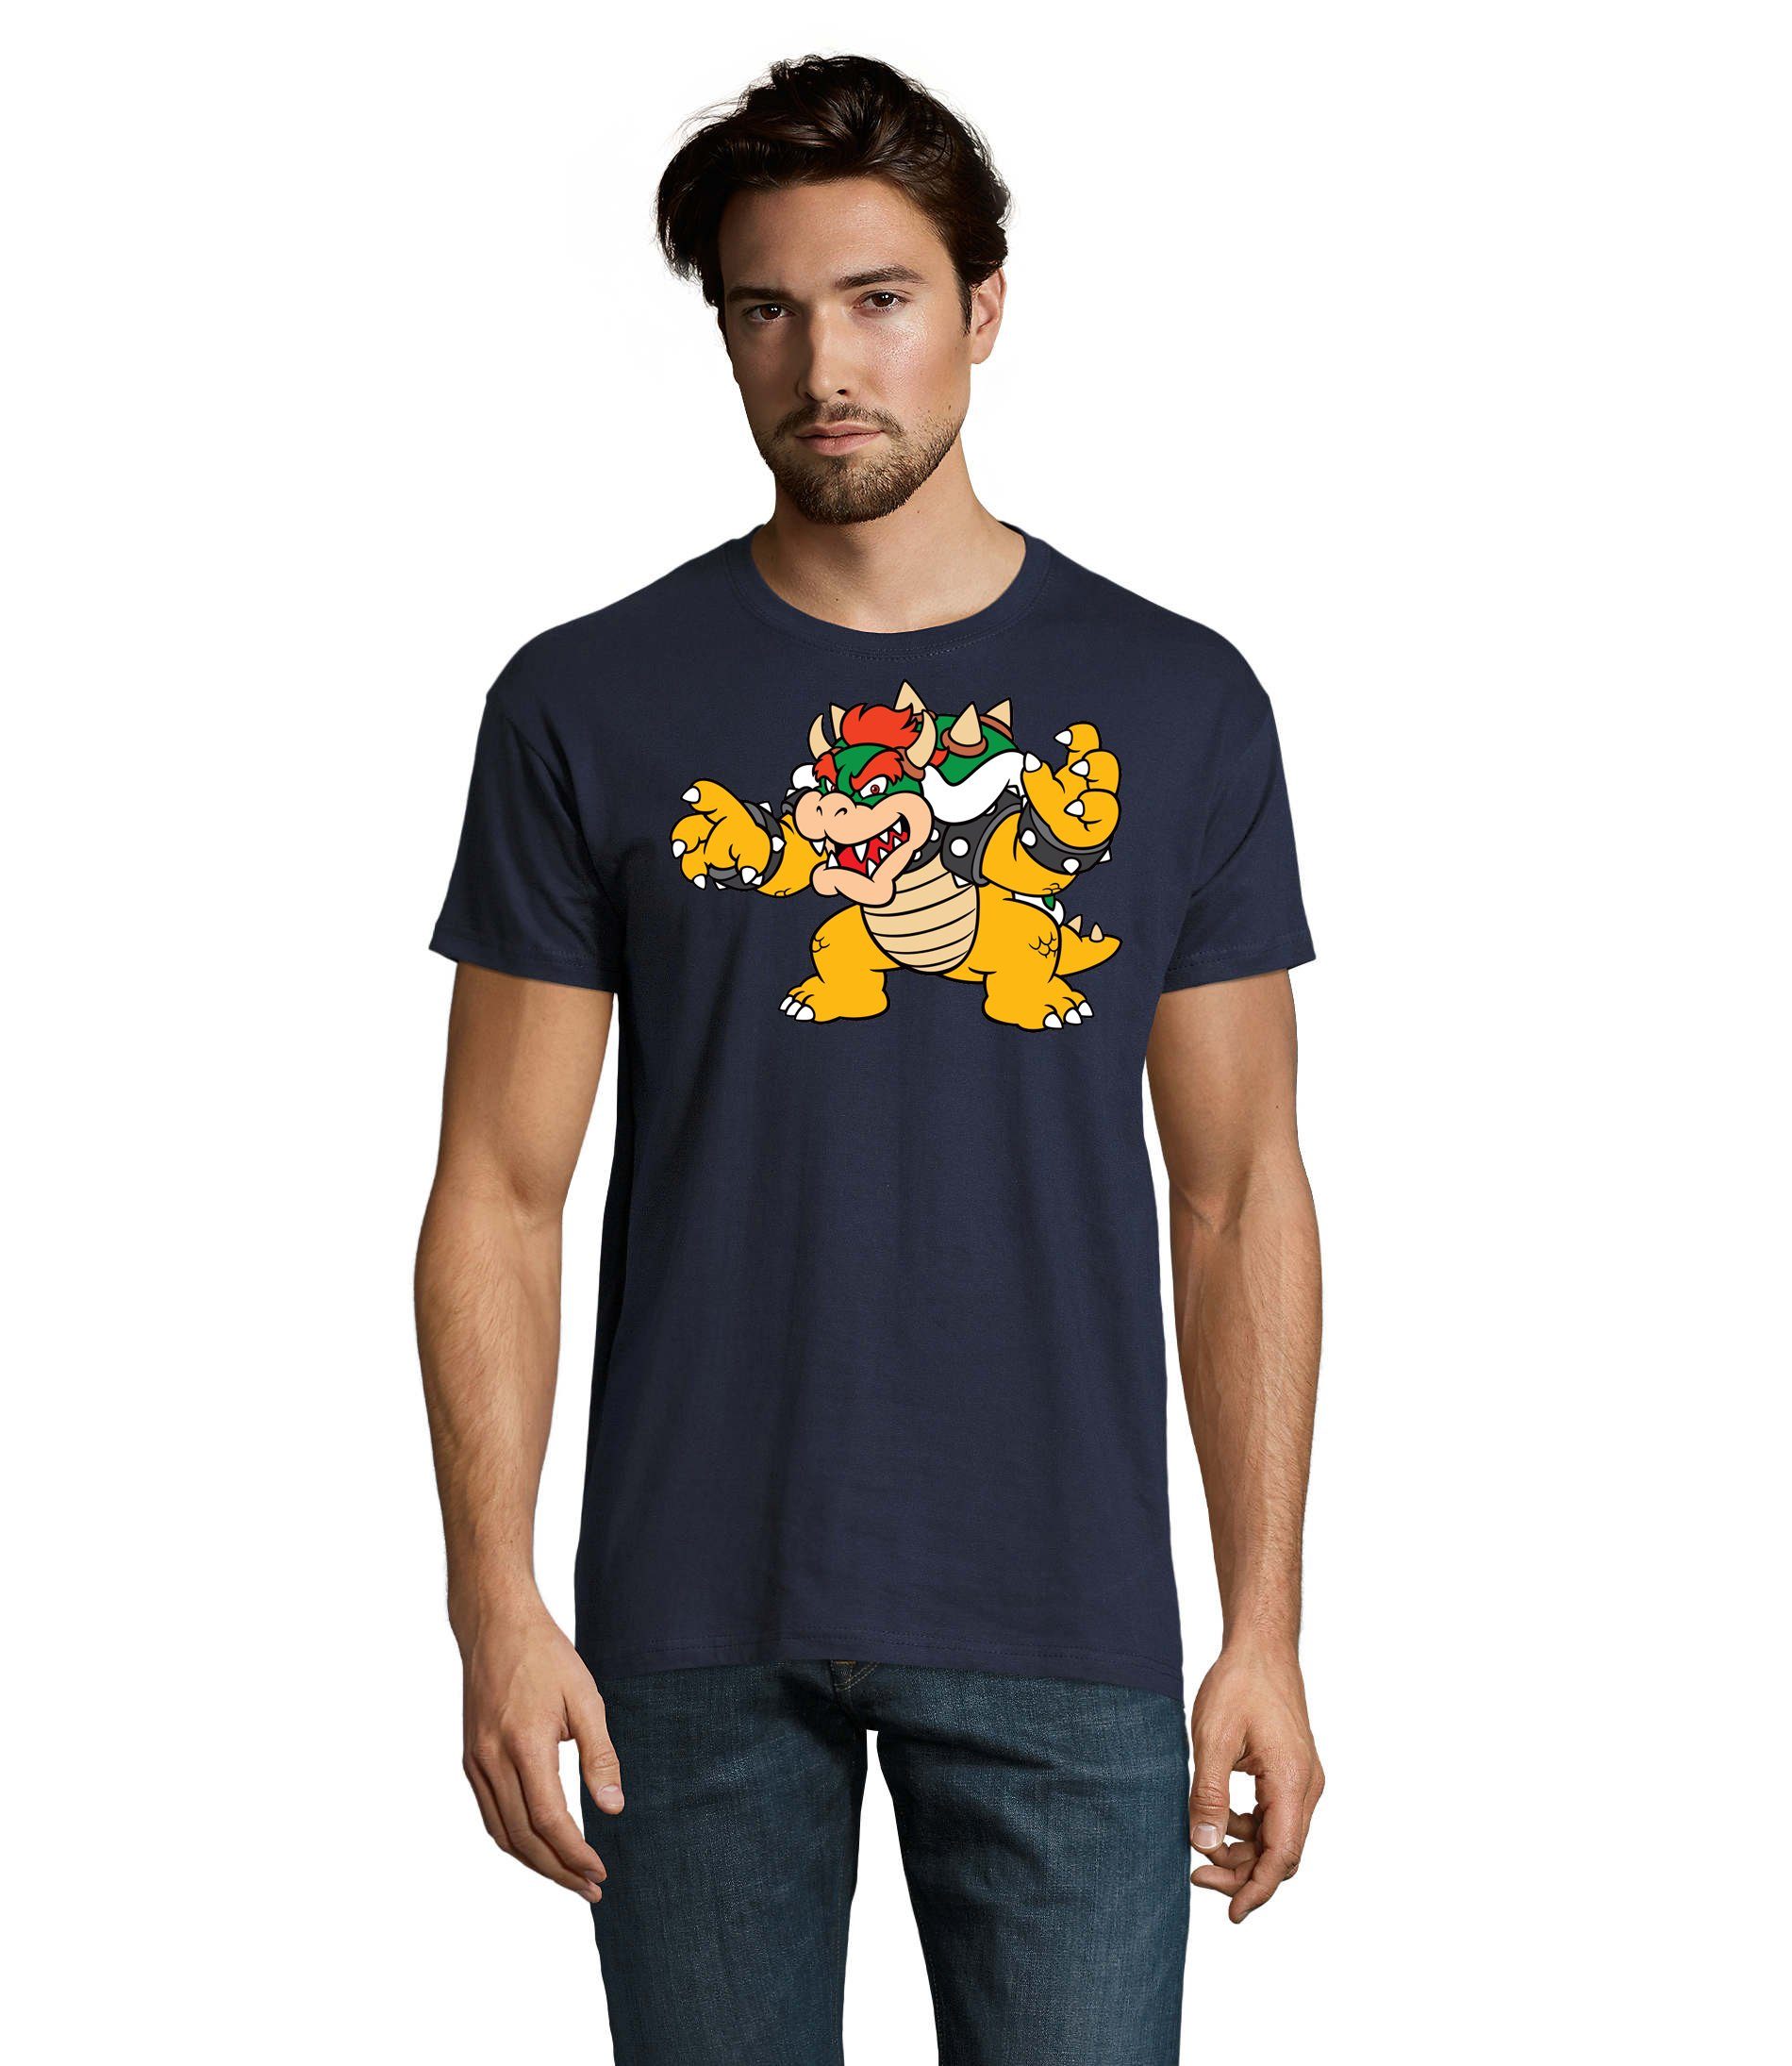 T-Shirt Nintendo Game Brownie Mario Blondie Gamer Konsole Herren & Yoshi Luigi Gaming Navyblau